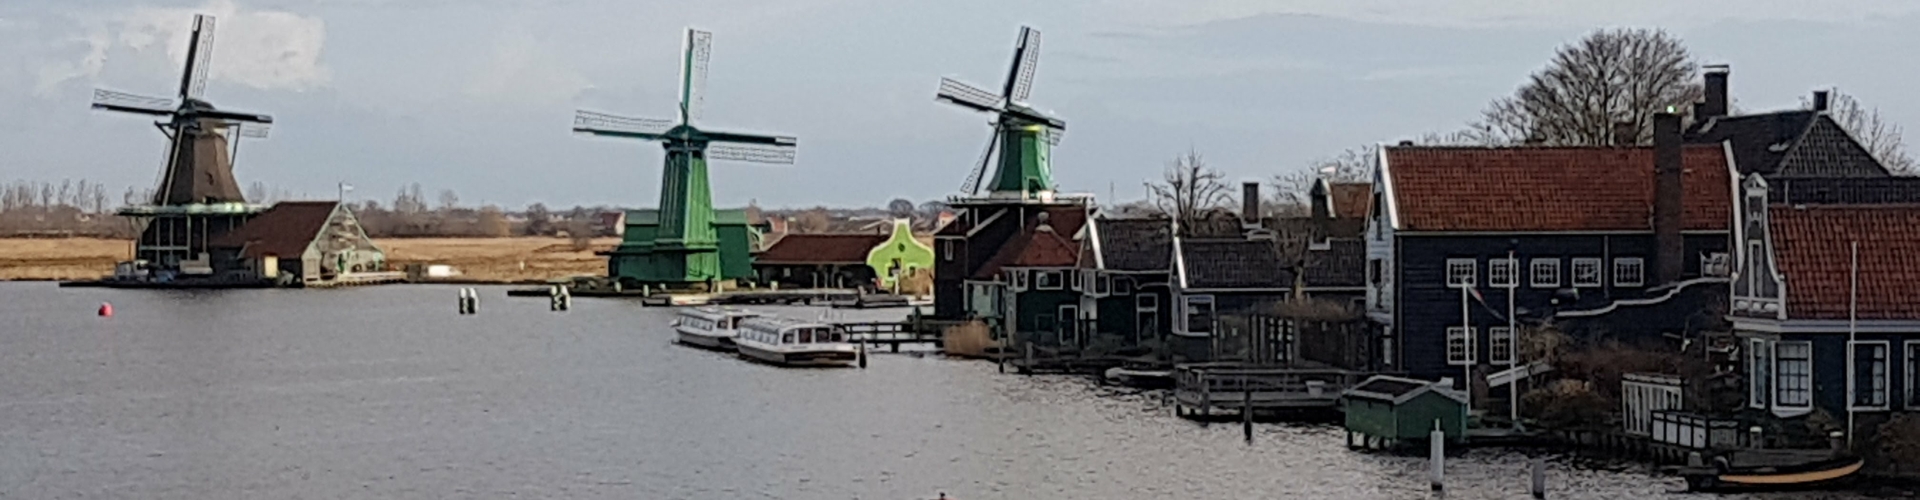 Windmills at Zaanse Schans Windmills village